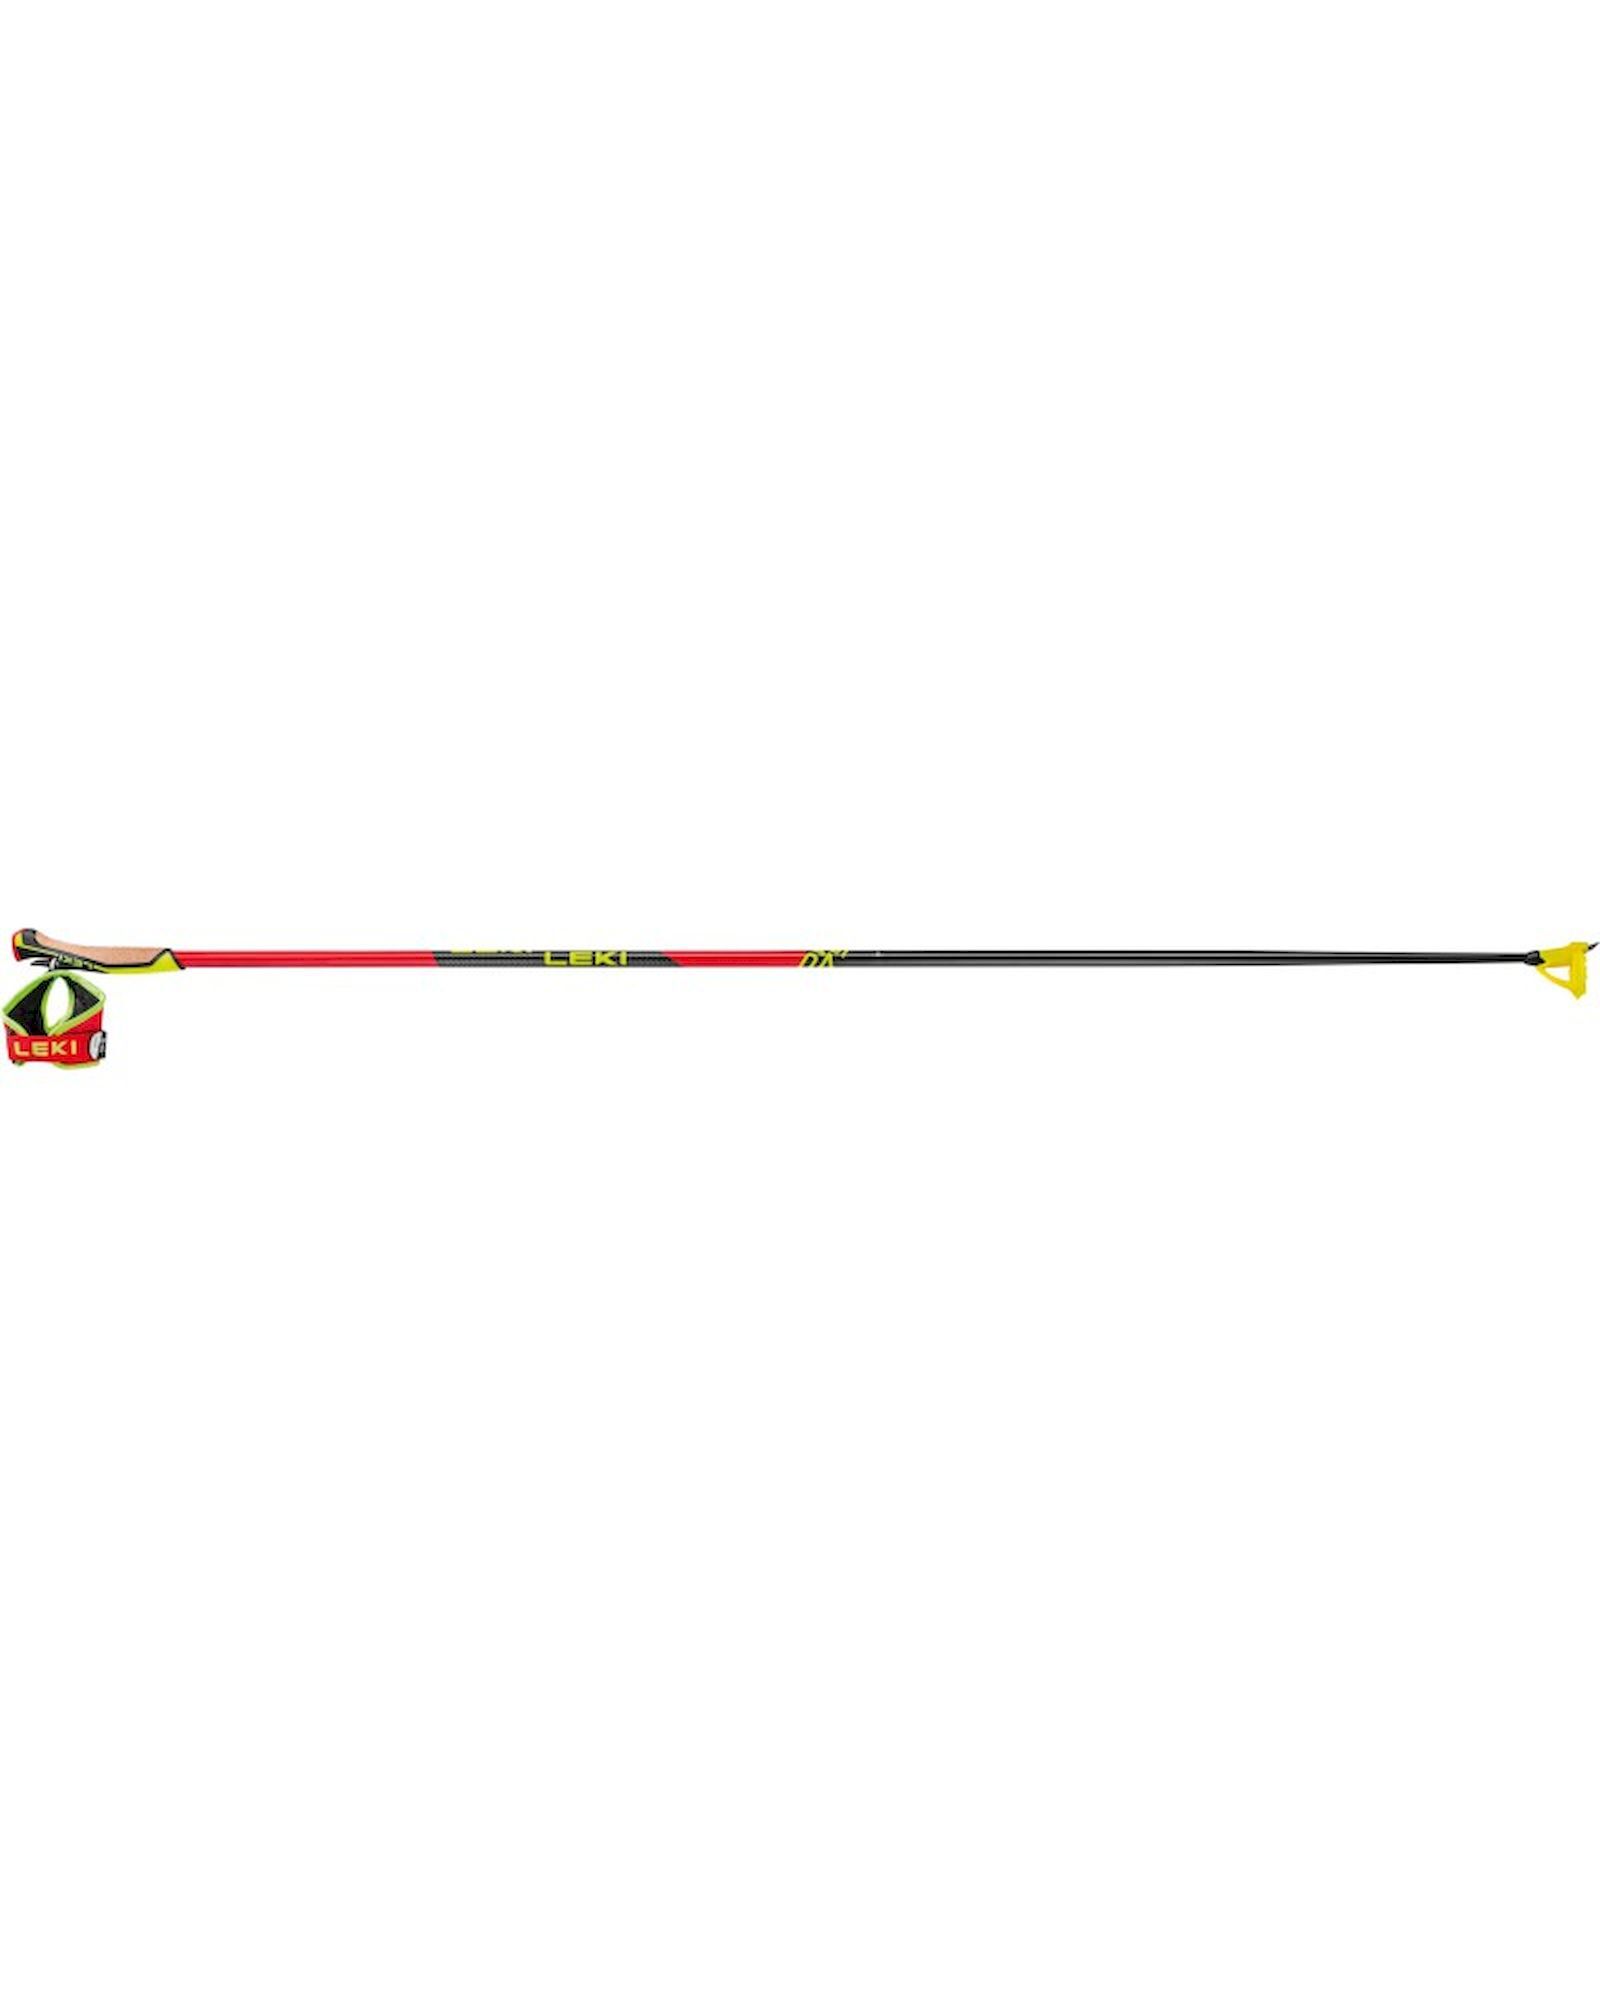 Leki PRC 750 - Skistöcke | Hardloop